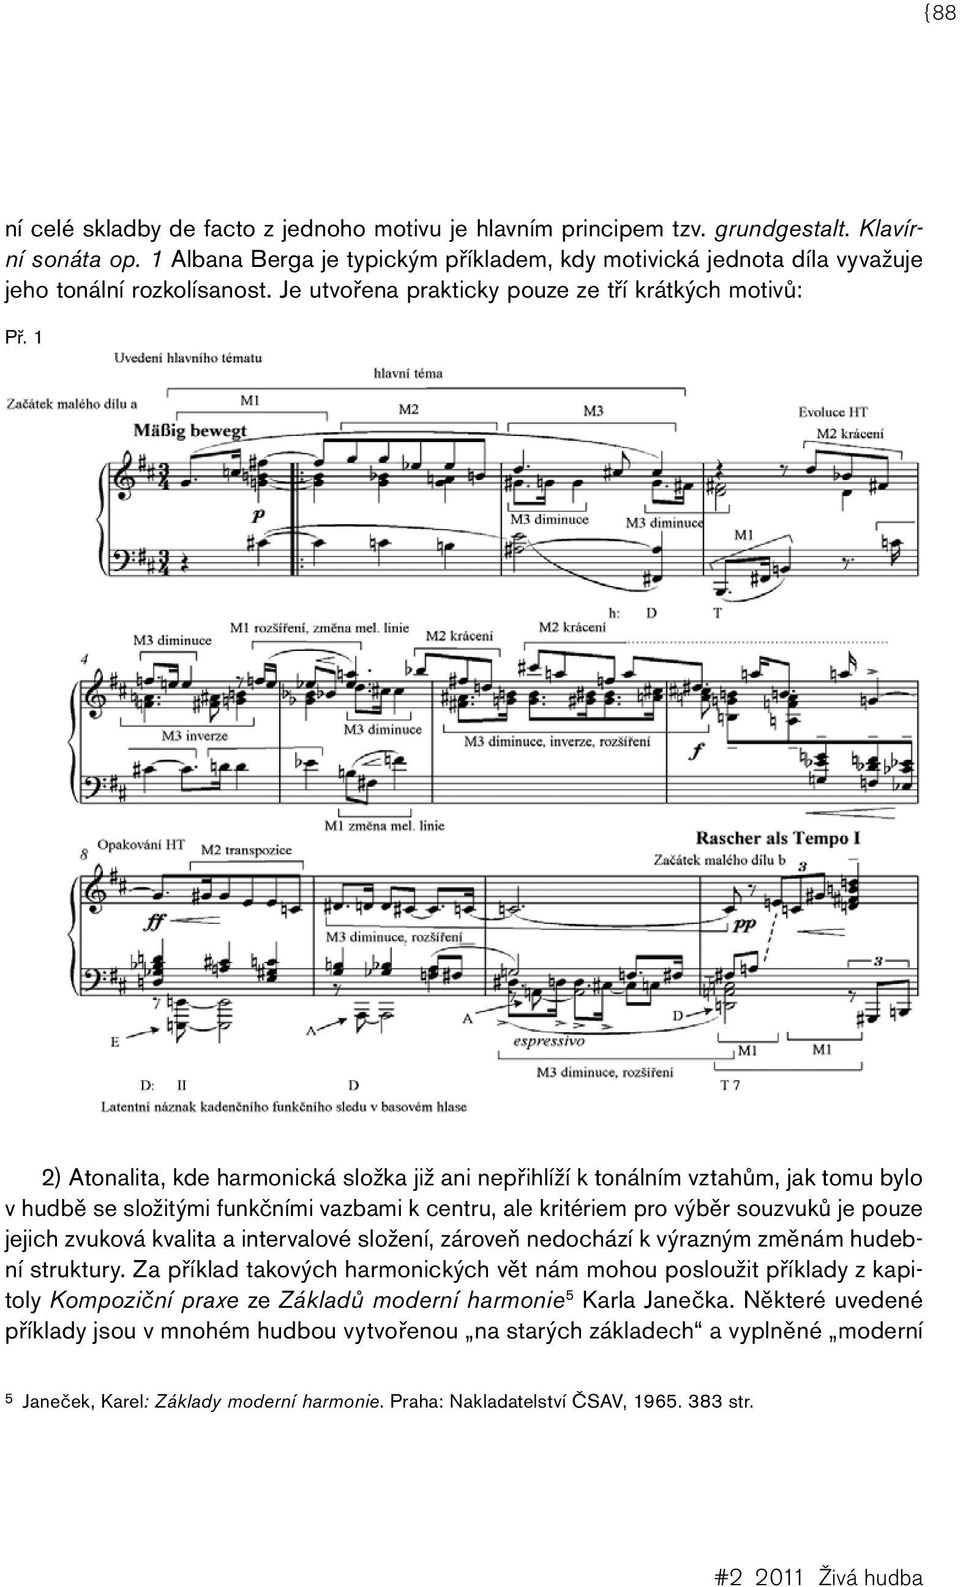 1 2) Atonalita, kde harmonická složka již ani nepřihlíží k tonálním vztahům, jak tomu bylo v hudbě se složitými funkčními vazbami k centru, ale kritériem pro výběr souzvuků je pouze jejich zvuková